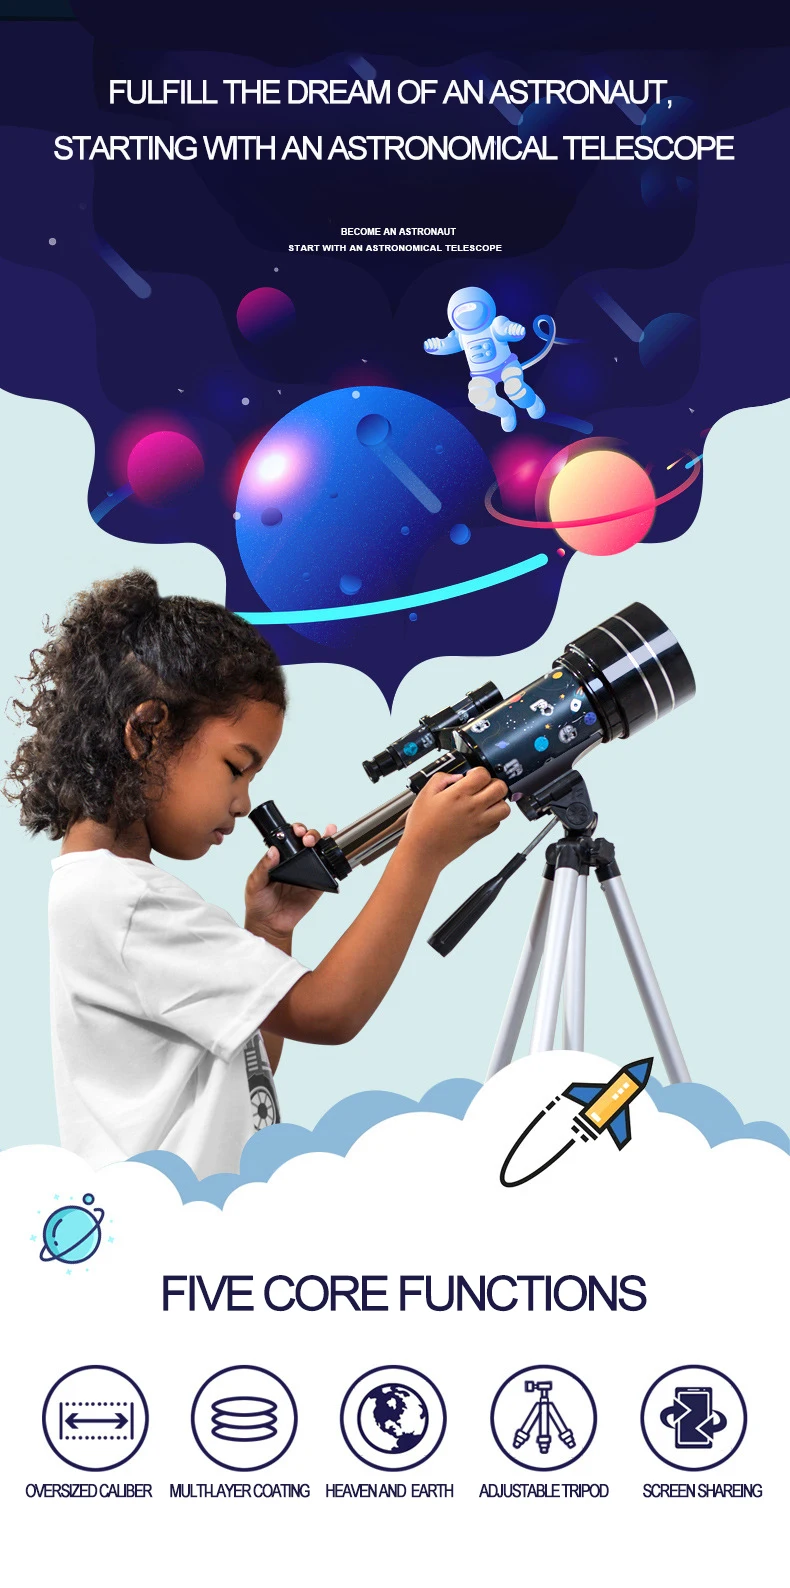 70mm abertura e 300mm distância focal presente para crianças